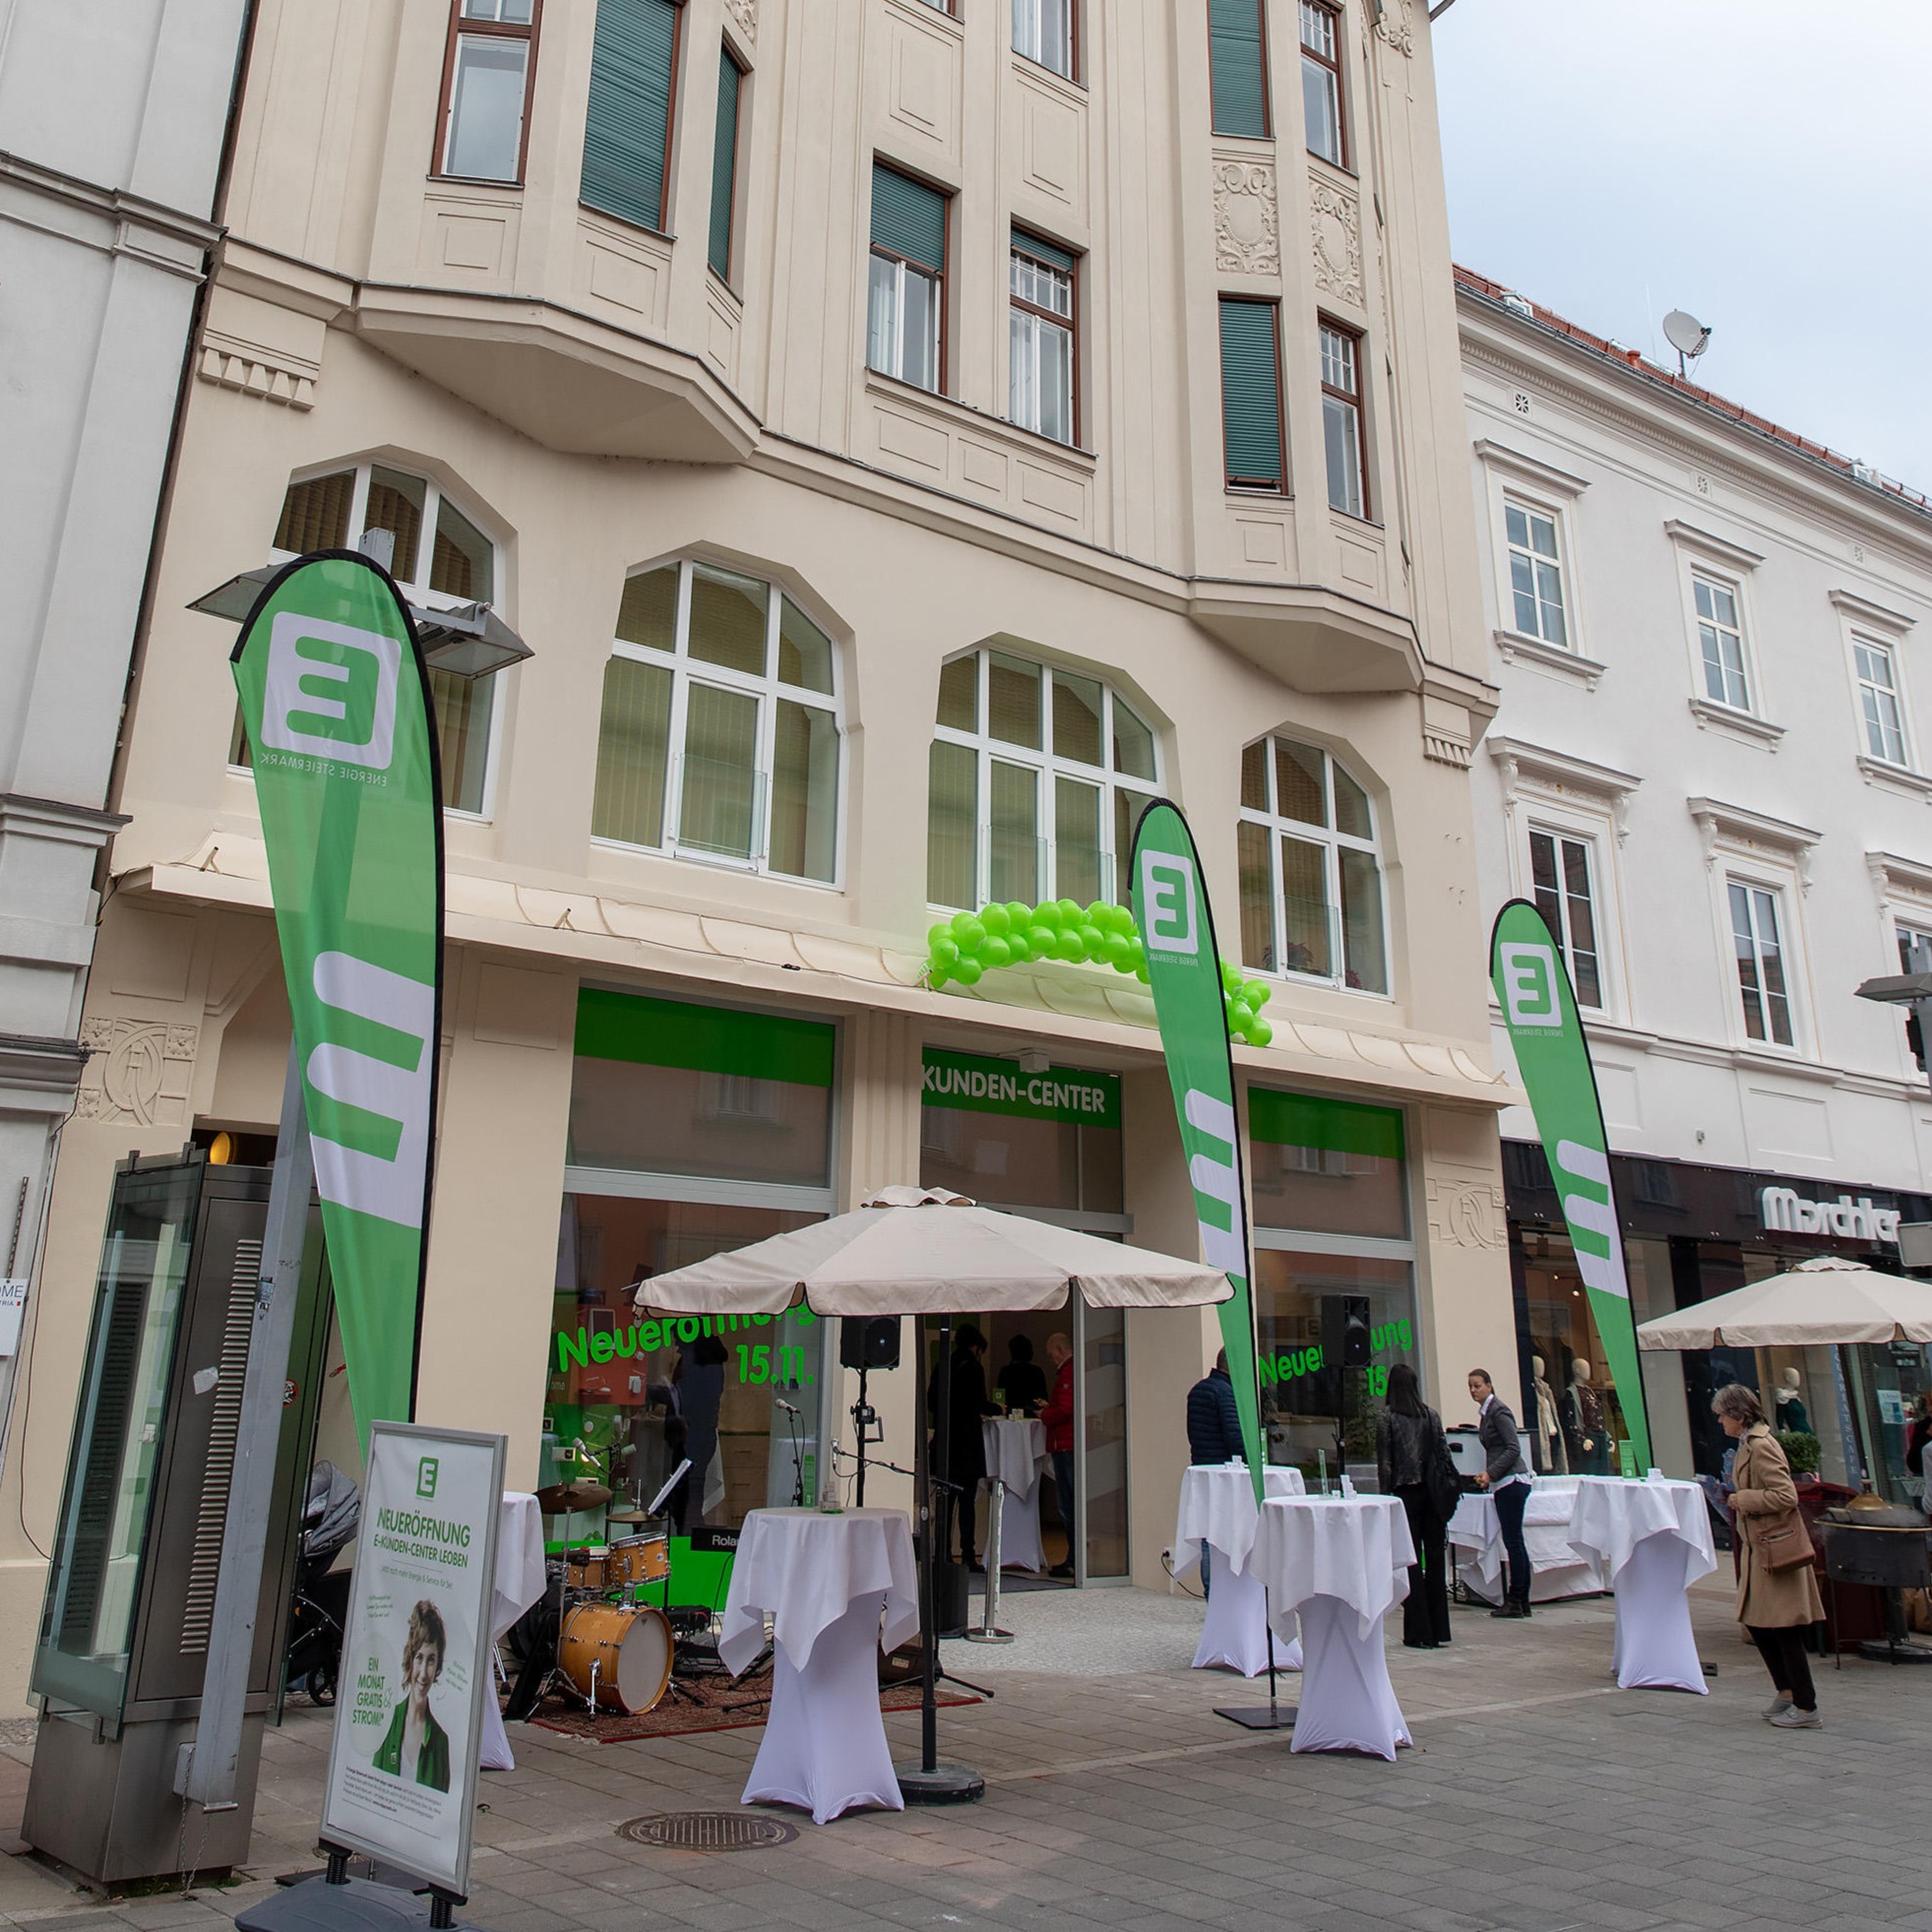 Bilder Energie Steiermark E-Kunden-Center